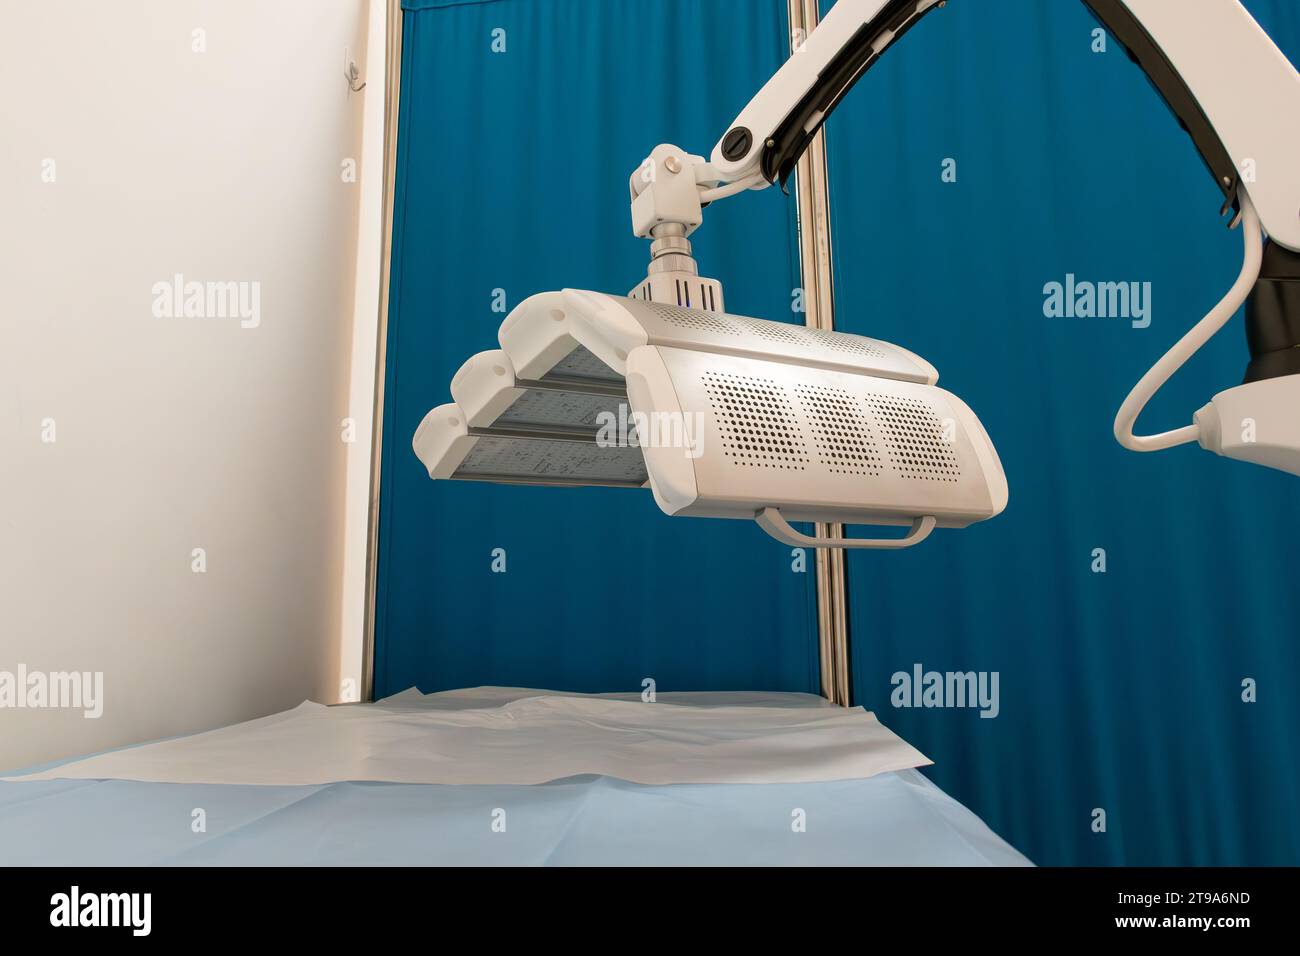 dispositif de thérapie laser rouge et bleu dans un hôpital à composition horizontale Banque D'Images